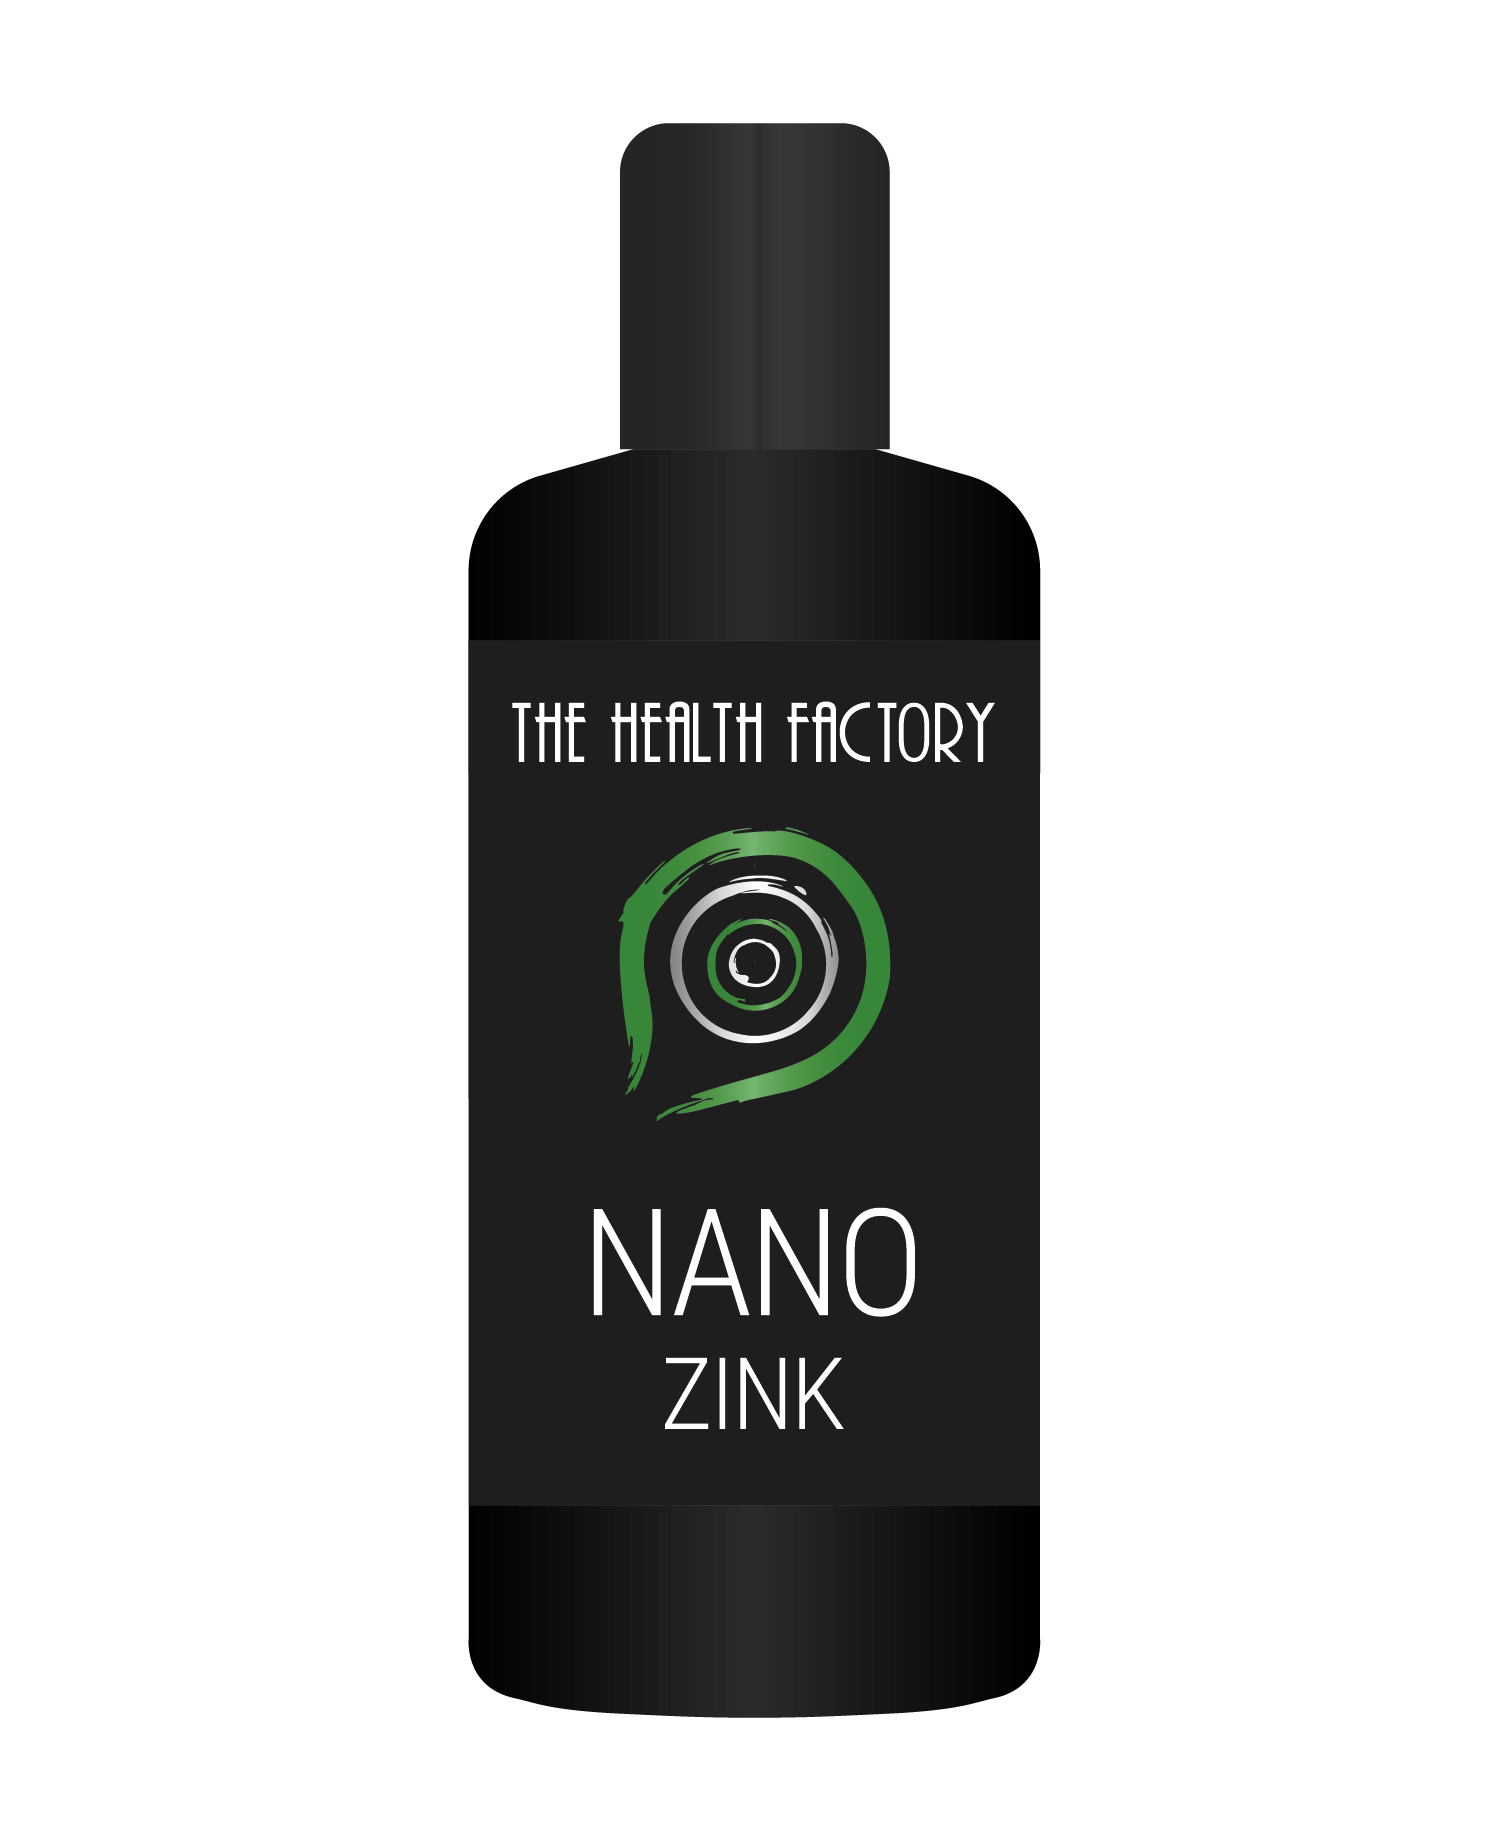 Nano zink